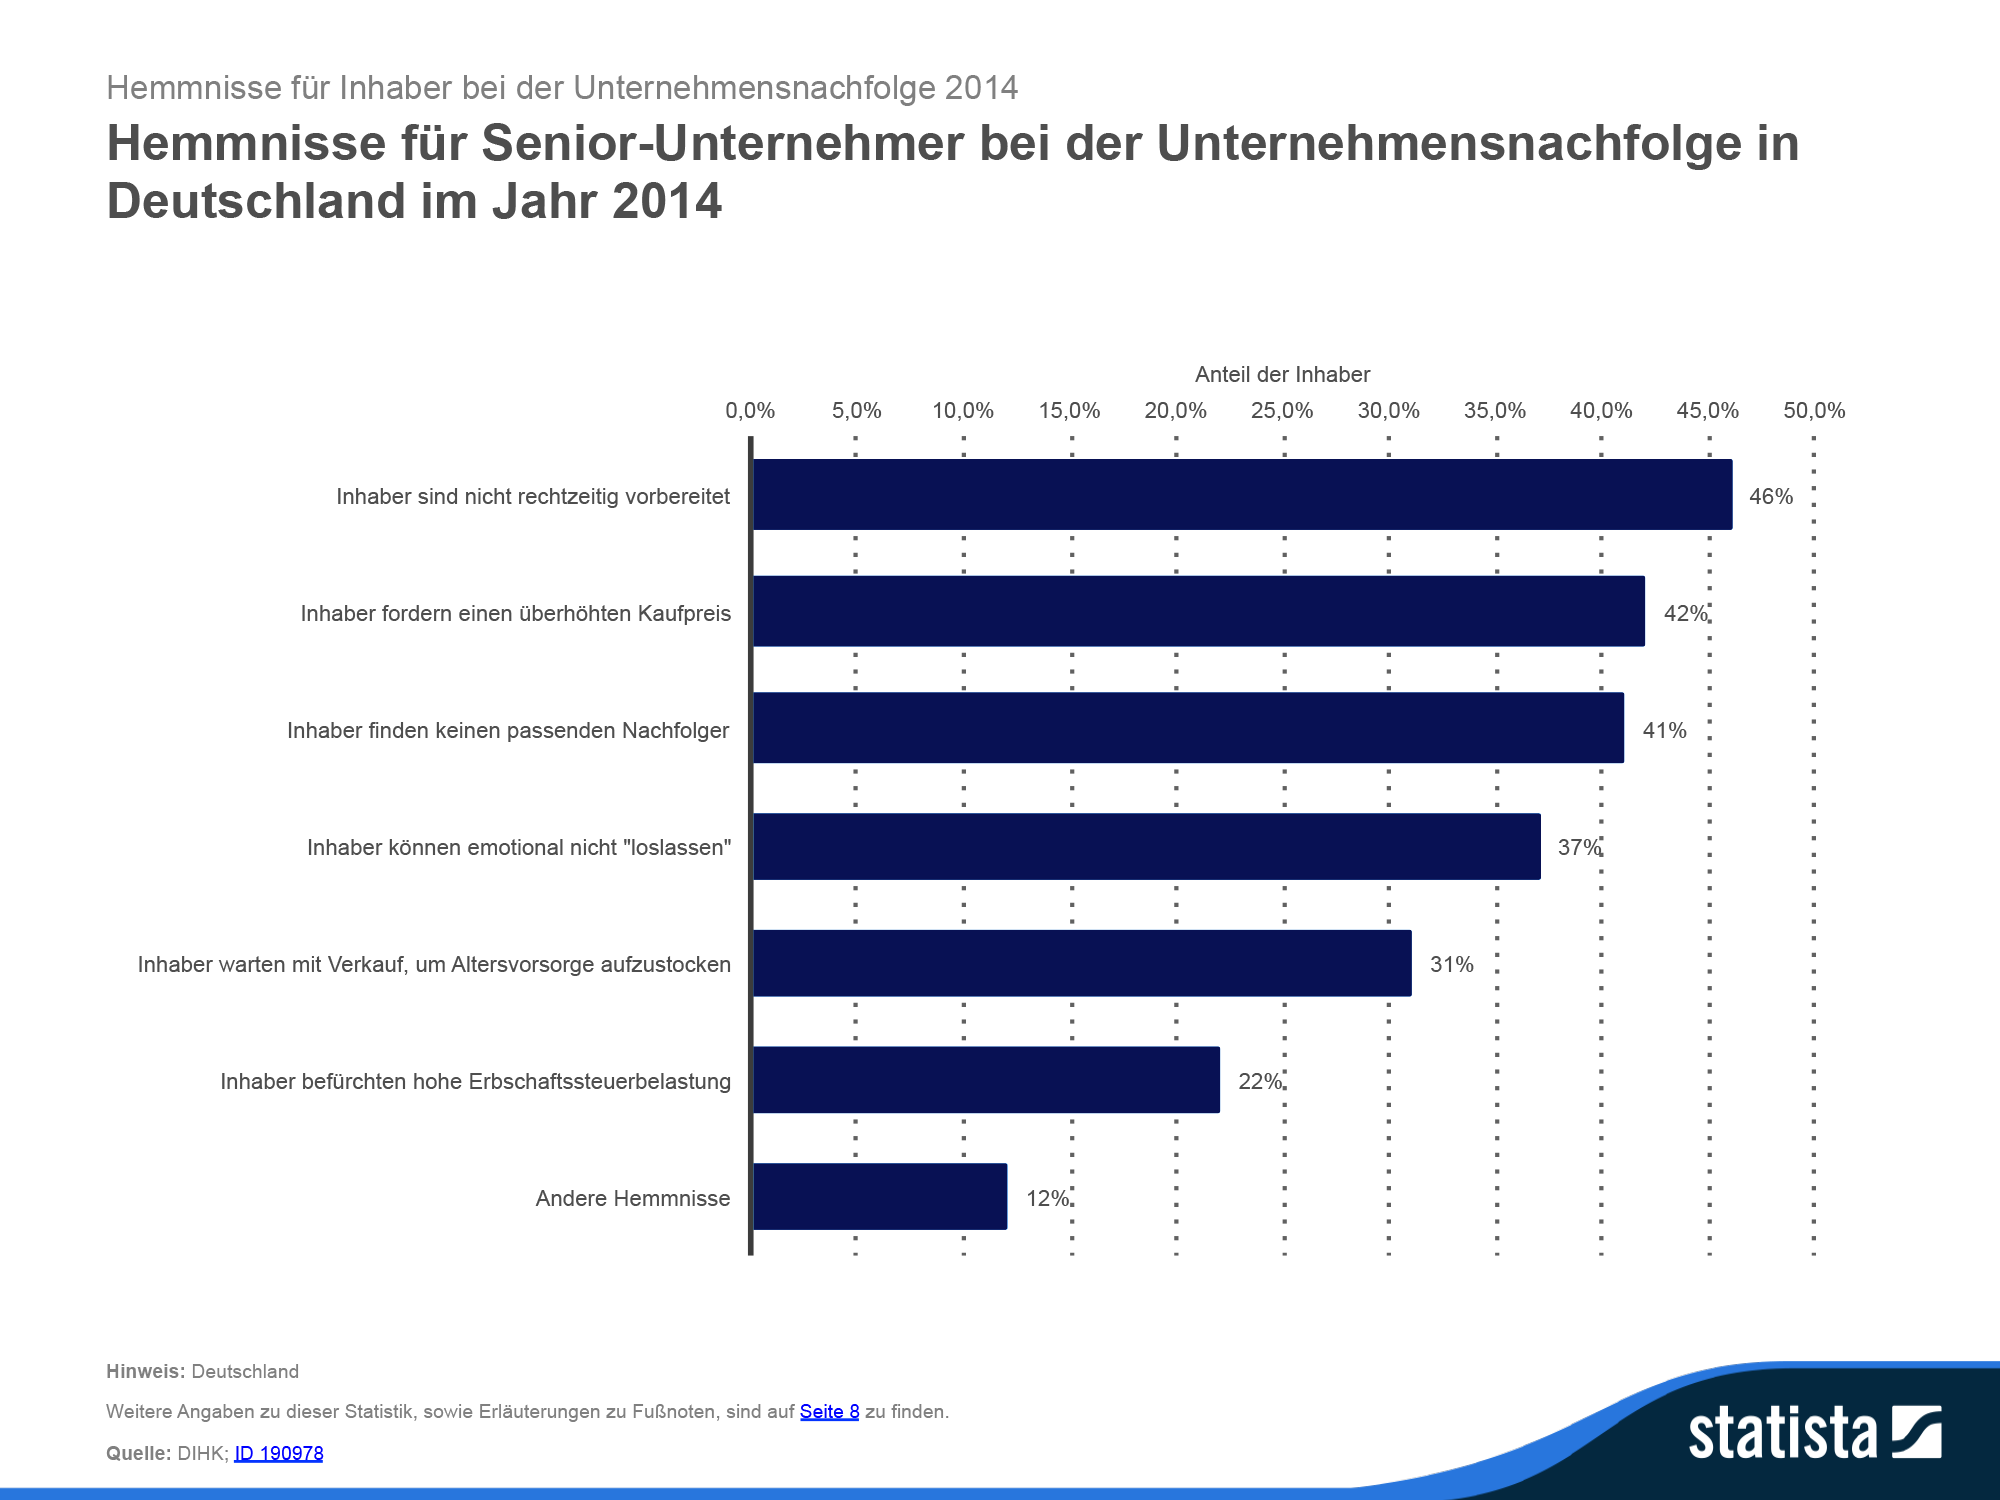 Hemnisse für Seniorunternehmer bei der Unternehmensnachfolge in Deutschland im Jahr 2014